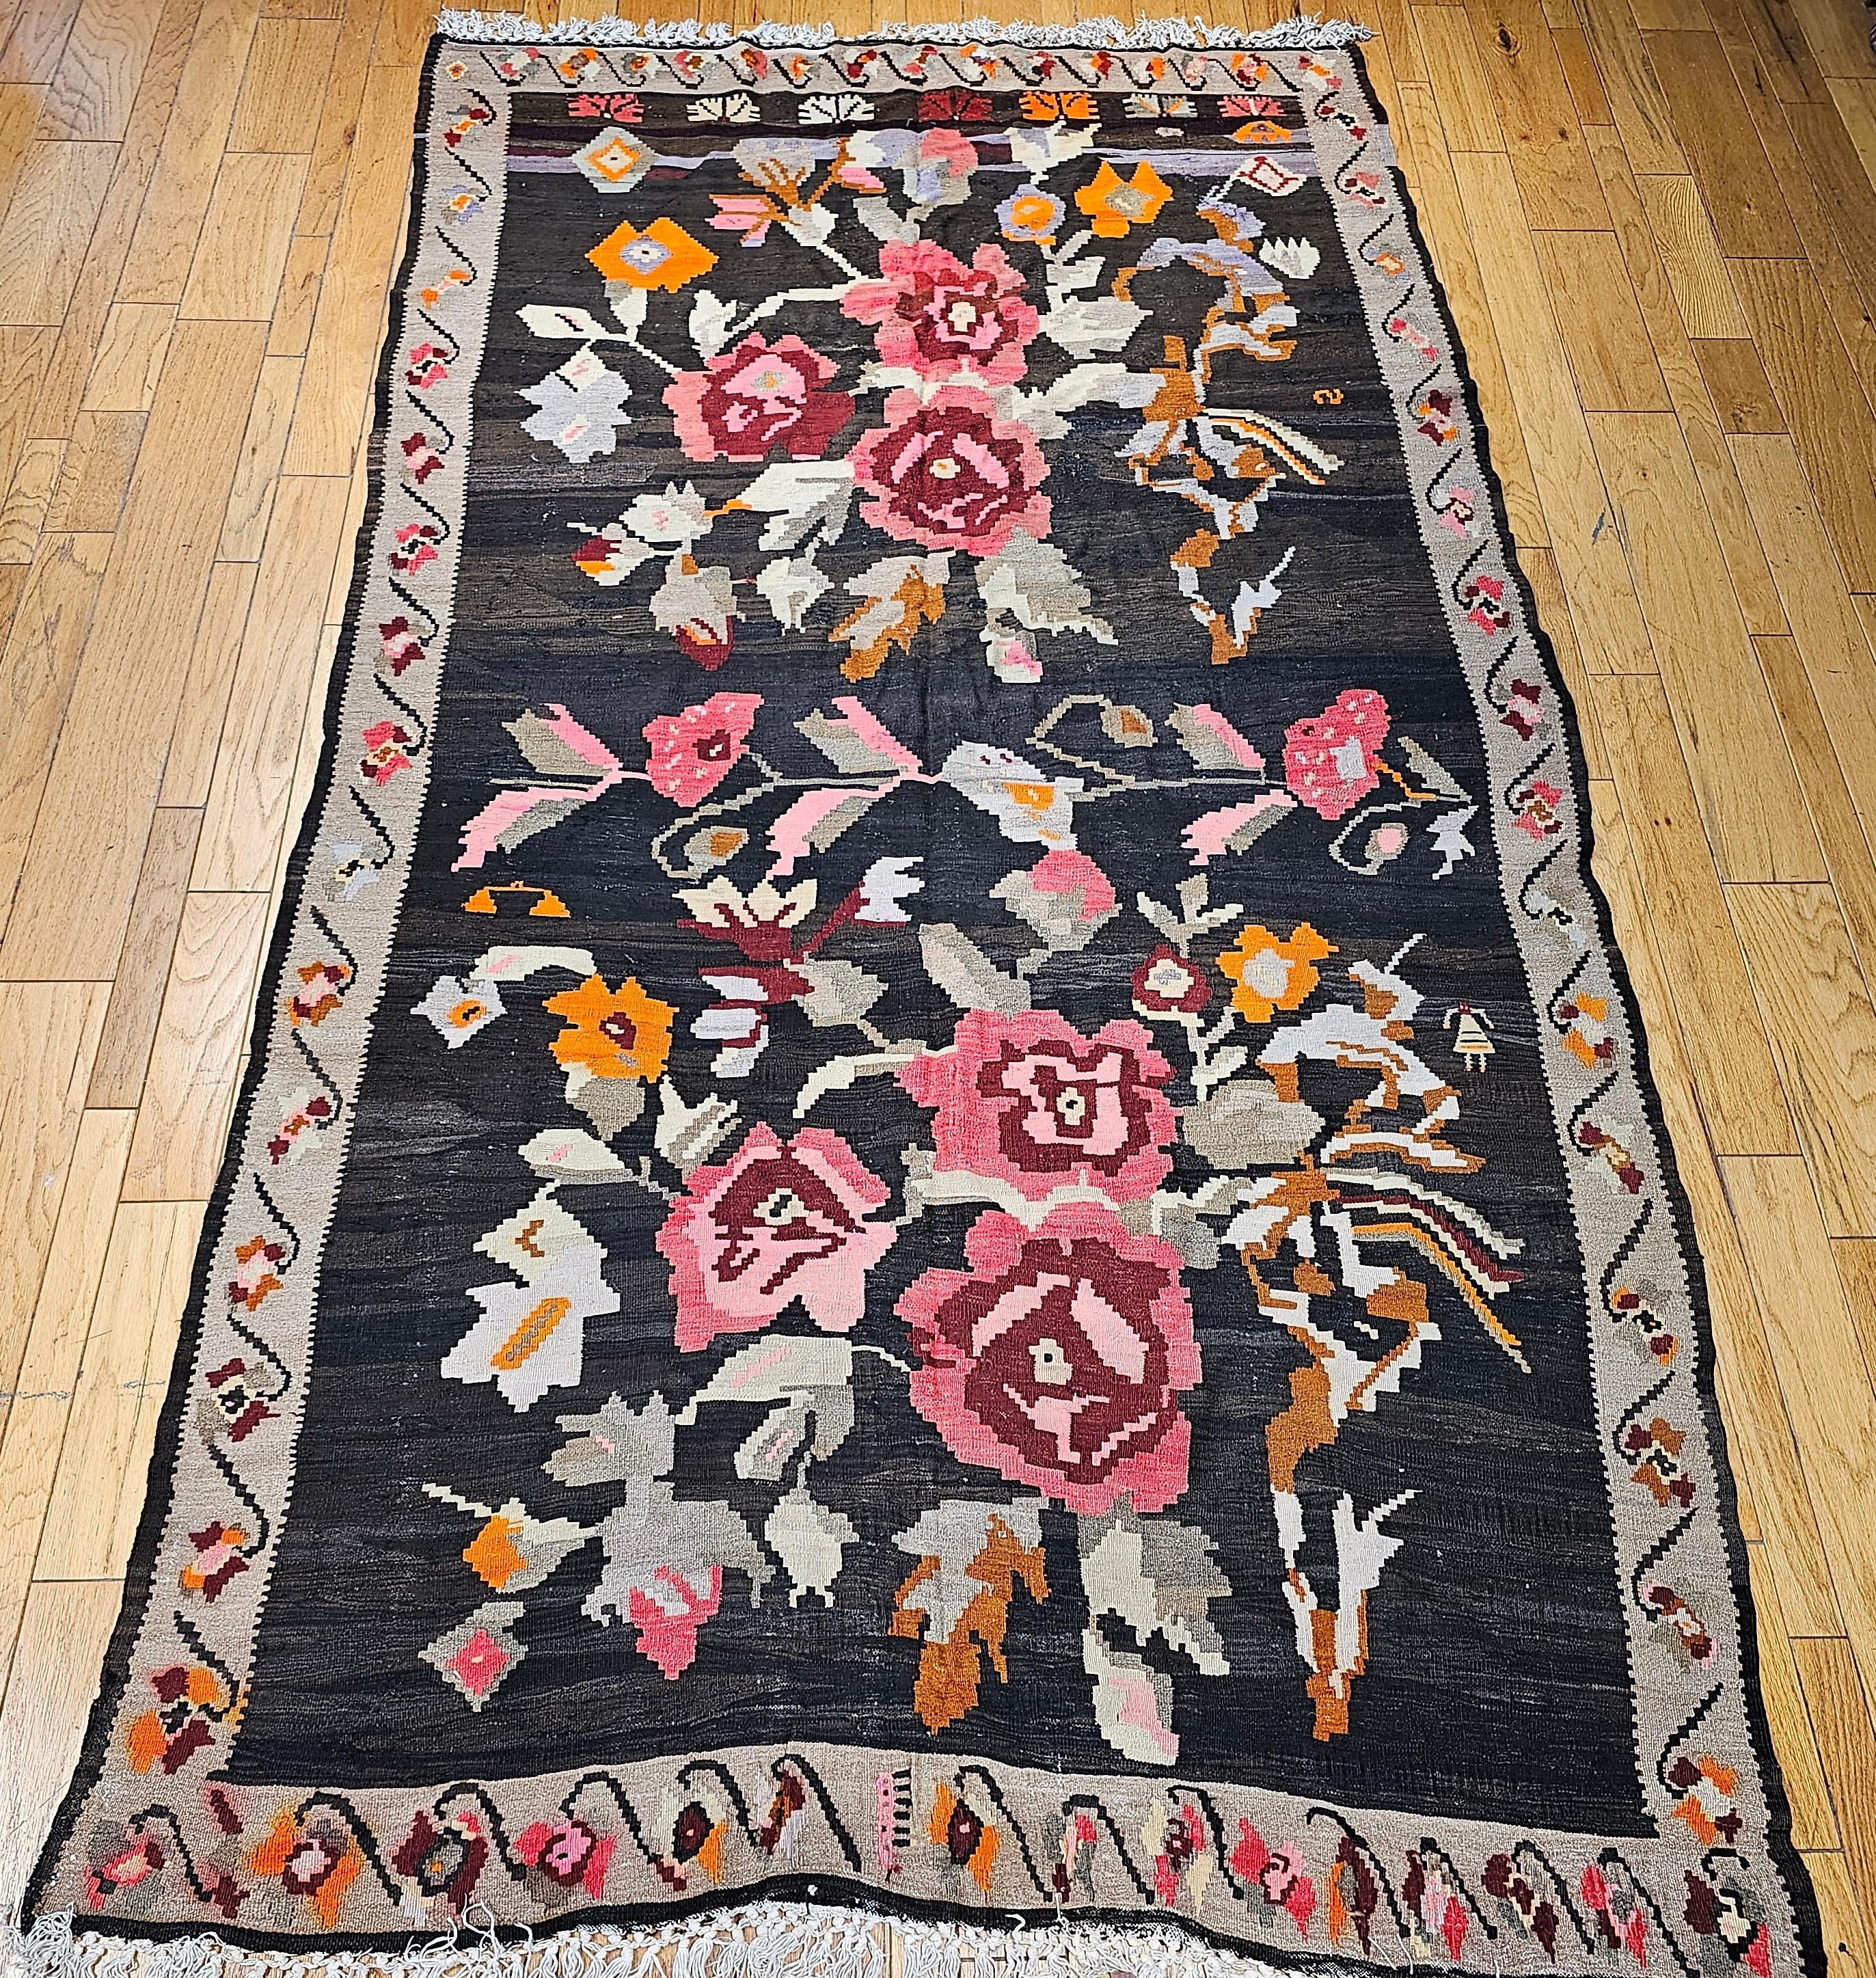 Vintage Karabagh Kilim Galerie oder Zimmer Größe Teppich mit großen floralen Design und leuchtenden Farben aus den frühen 1900er Jahren.   Der Kelim hat helle und schöne Farben, die in den beiden Blumensträußen verwendet werden, die das dunkle